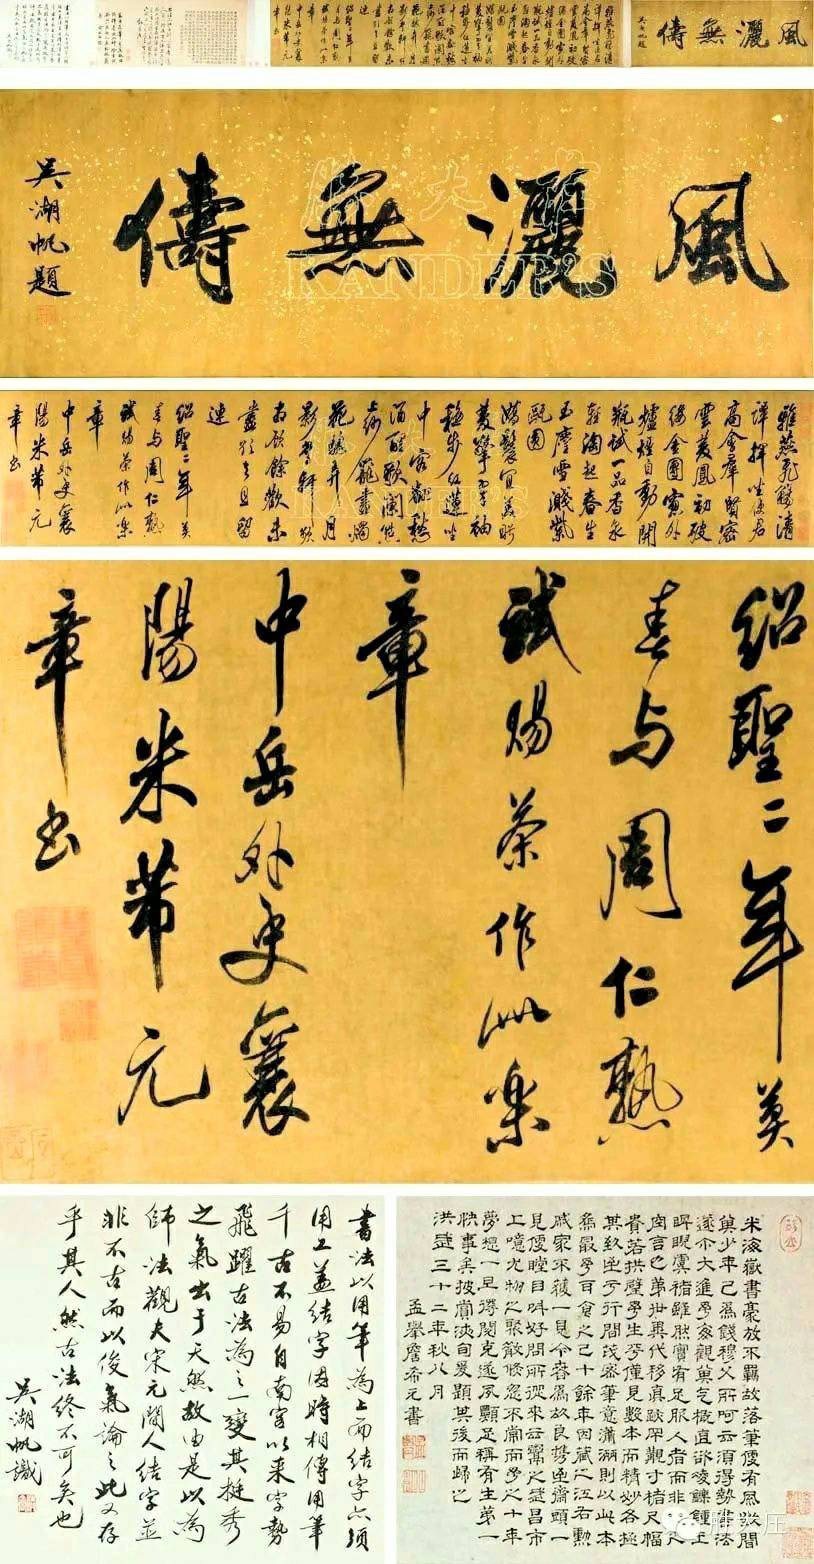 北京故宮隆重展出的勝大莊珍寶-北宋米芾“試賜茶樂章”書法長卷數位藝術品NFT。